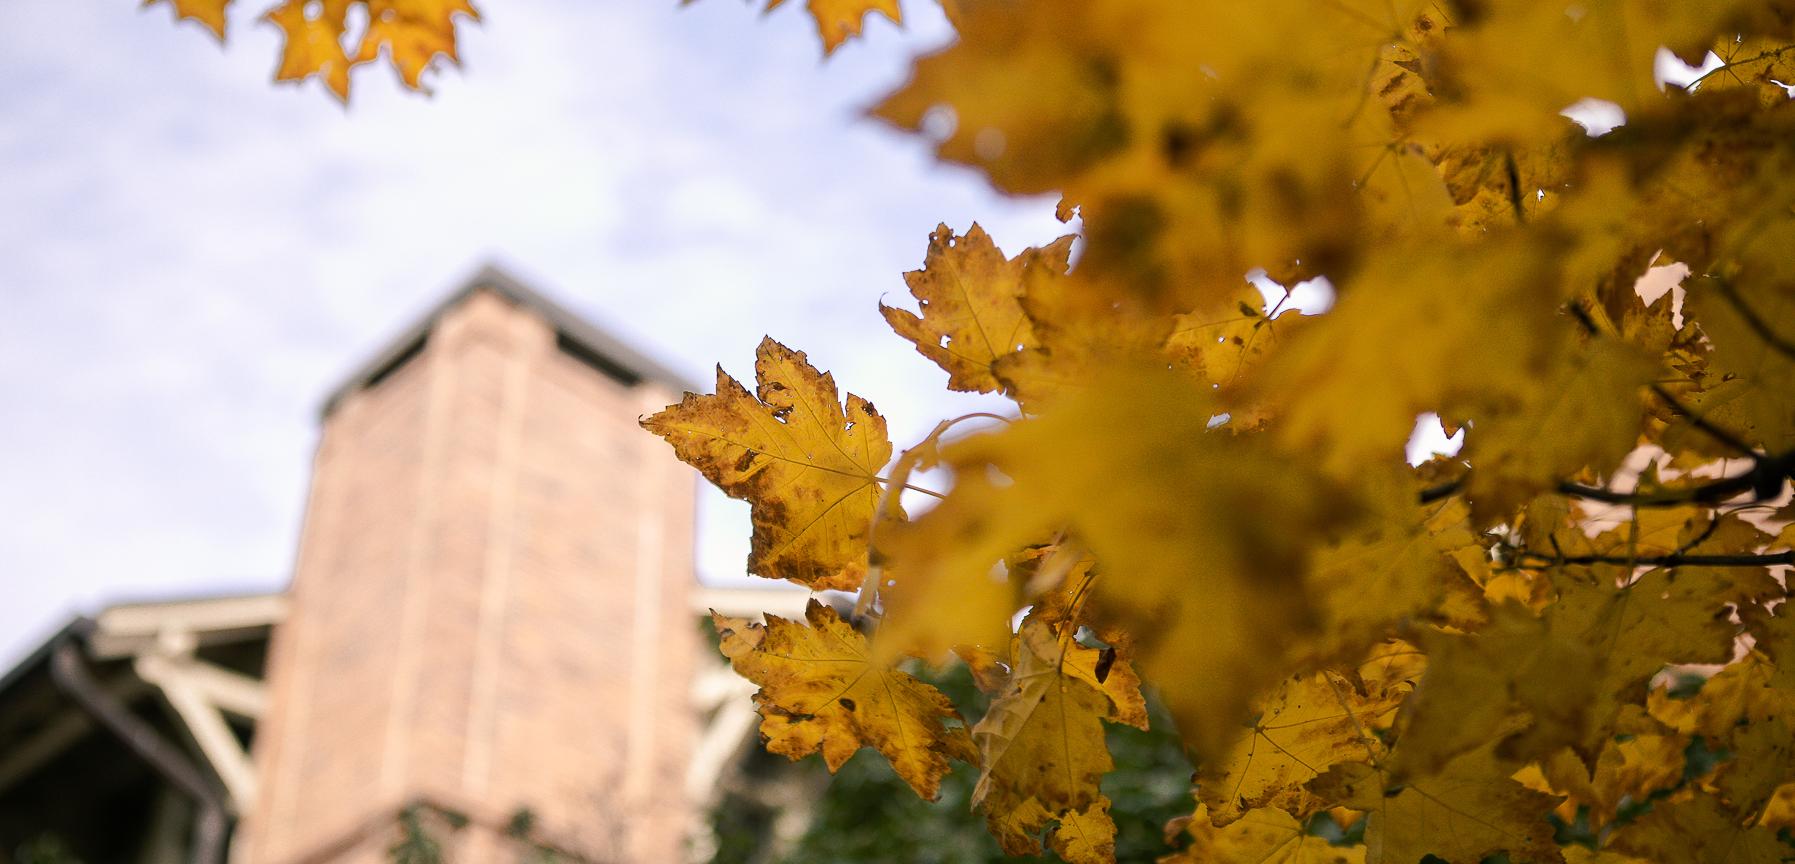 克里特岛 Campus leaves in fall